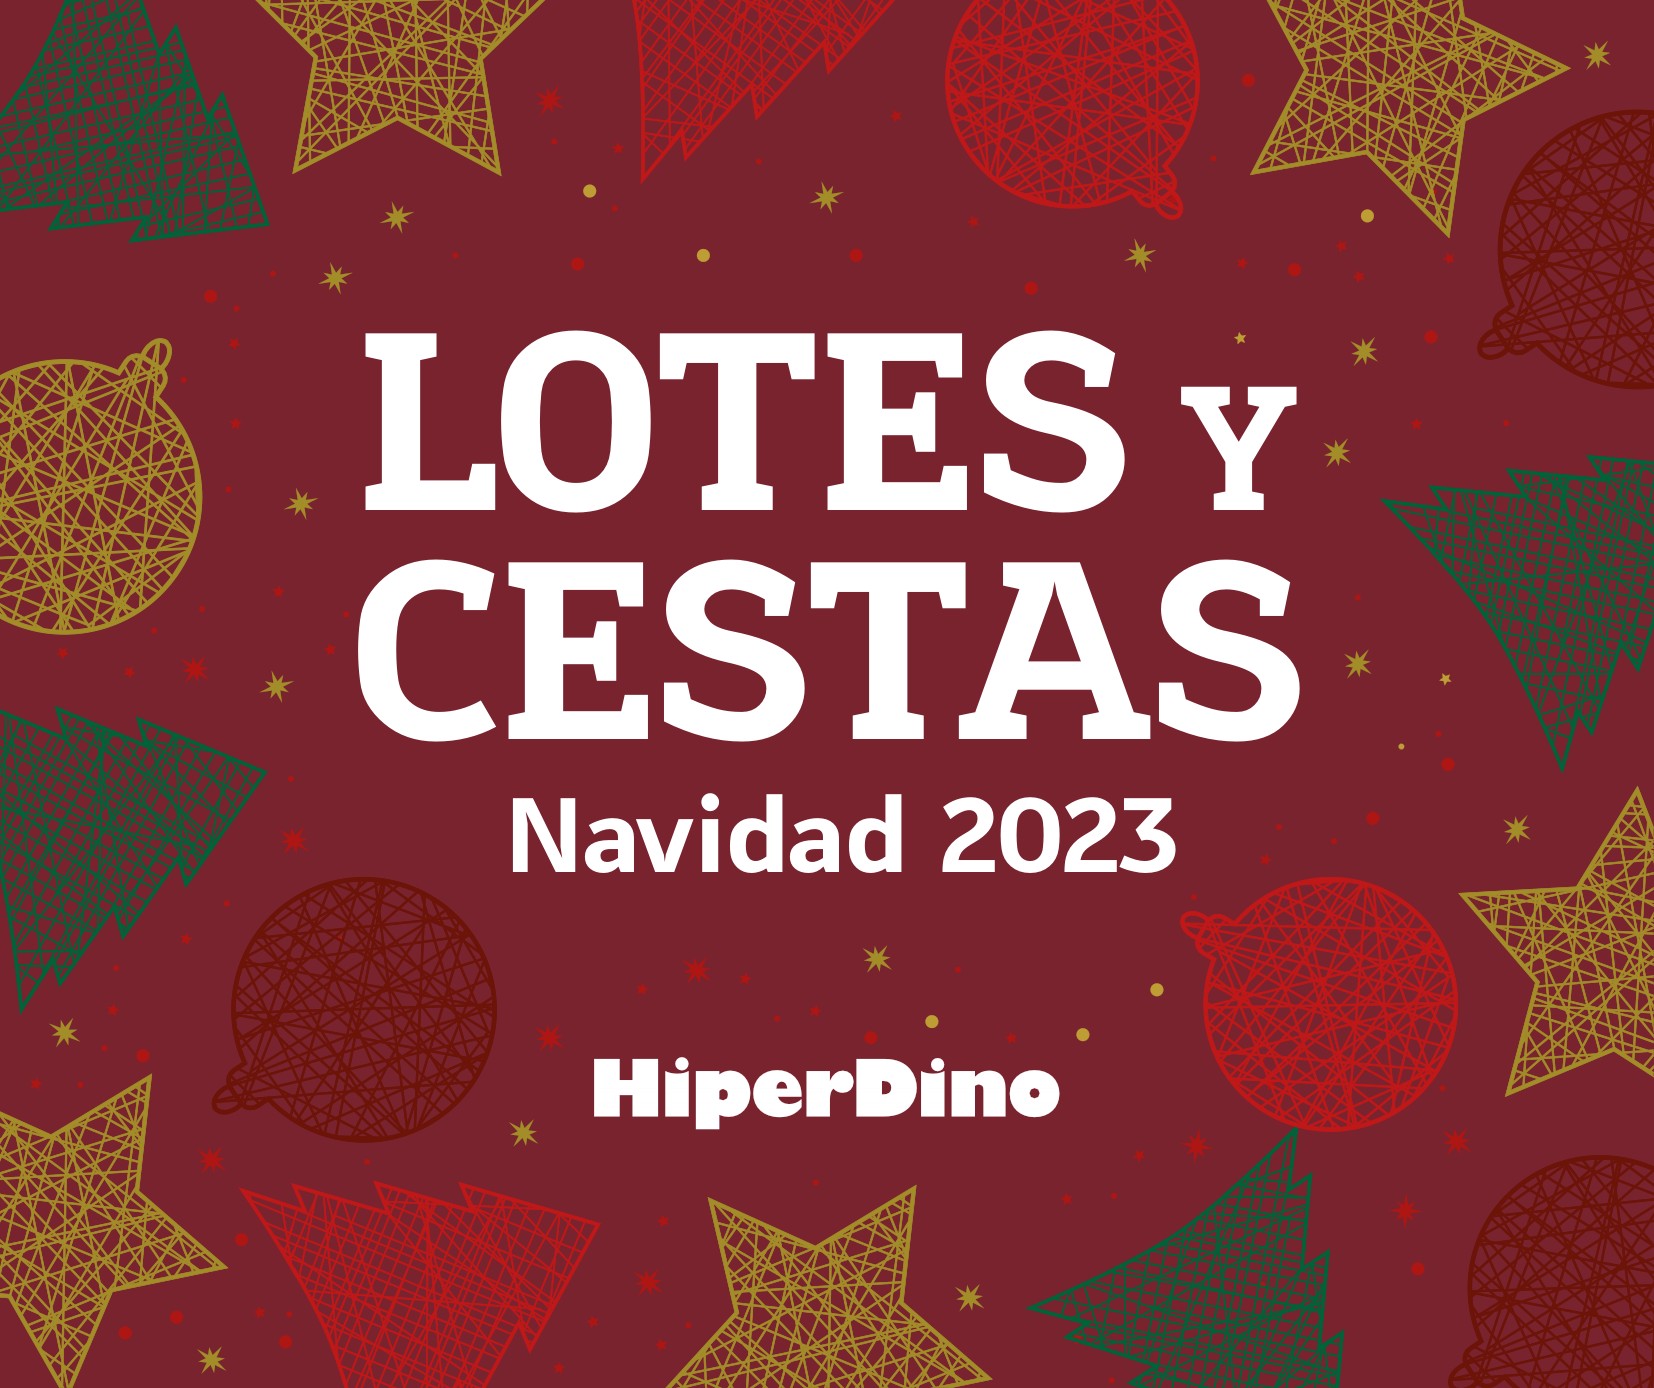 HiperDino Navidad Ofertas 2023 1 – hiperdino navidad 1